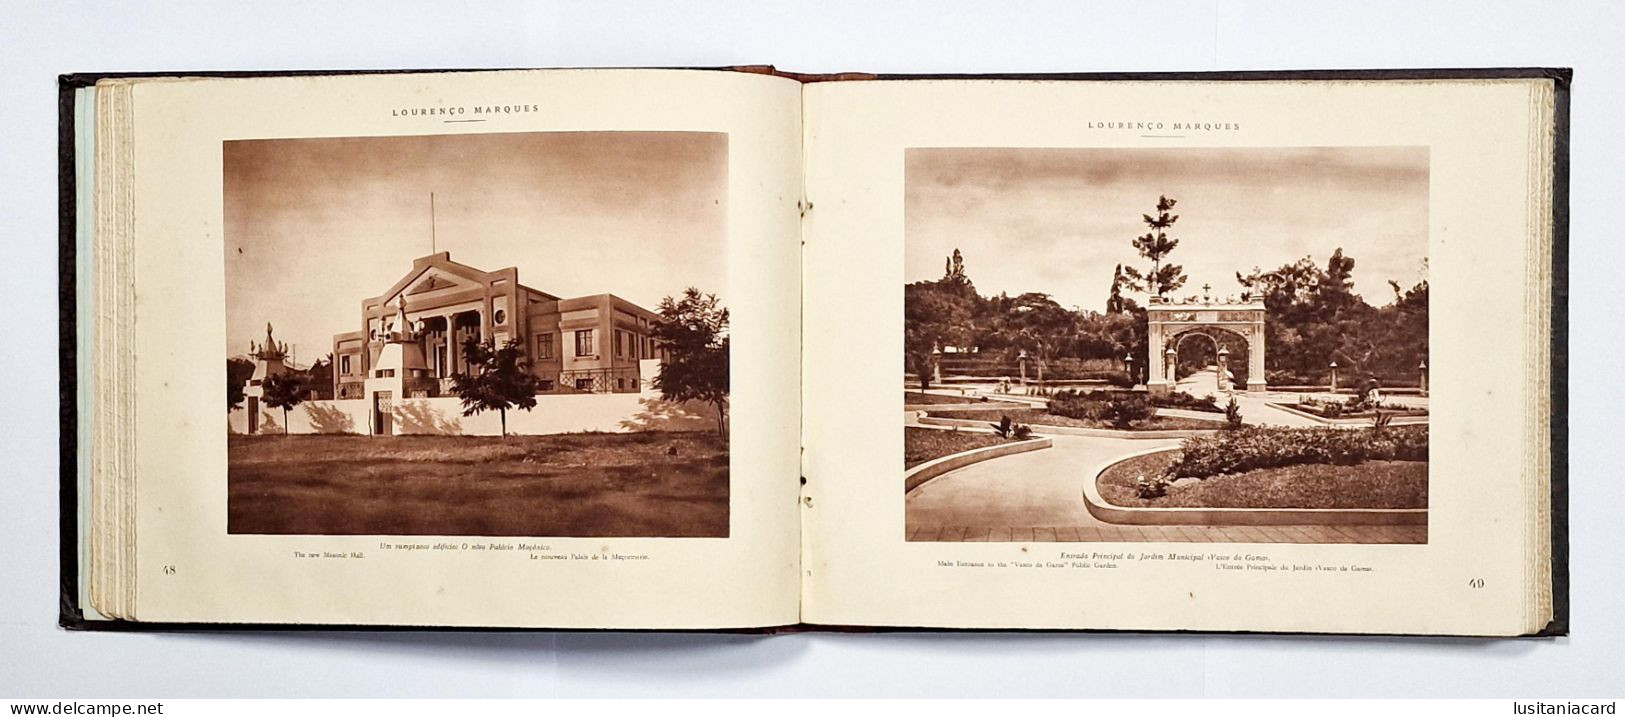 Albuns Fotograficos e Descritivos da Colonia de Moçambique(4 VOLUMES: I -II -III - IV-RARO)(José dos Santos Rufino-1929)